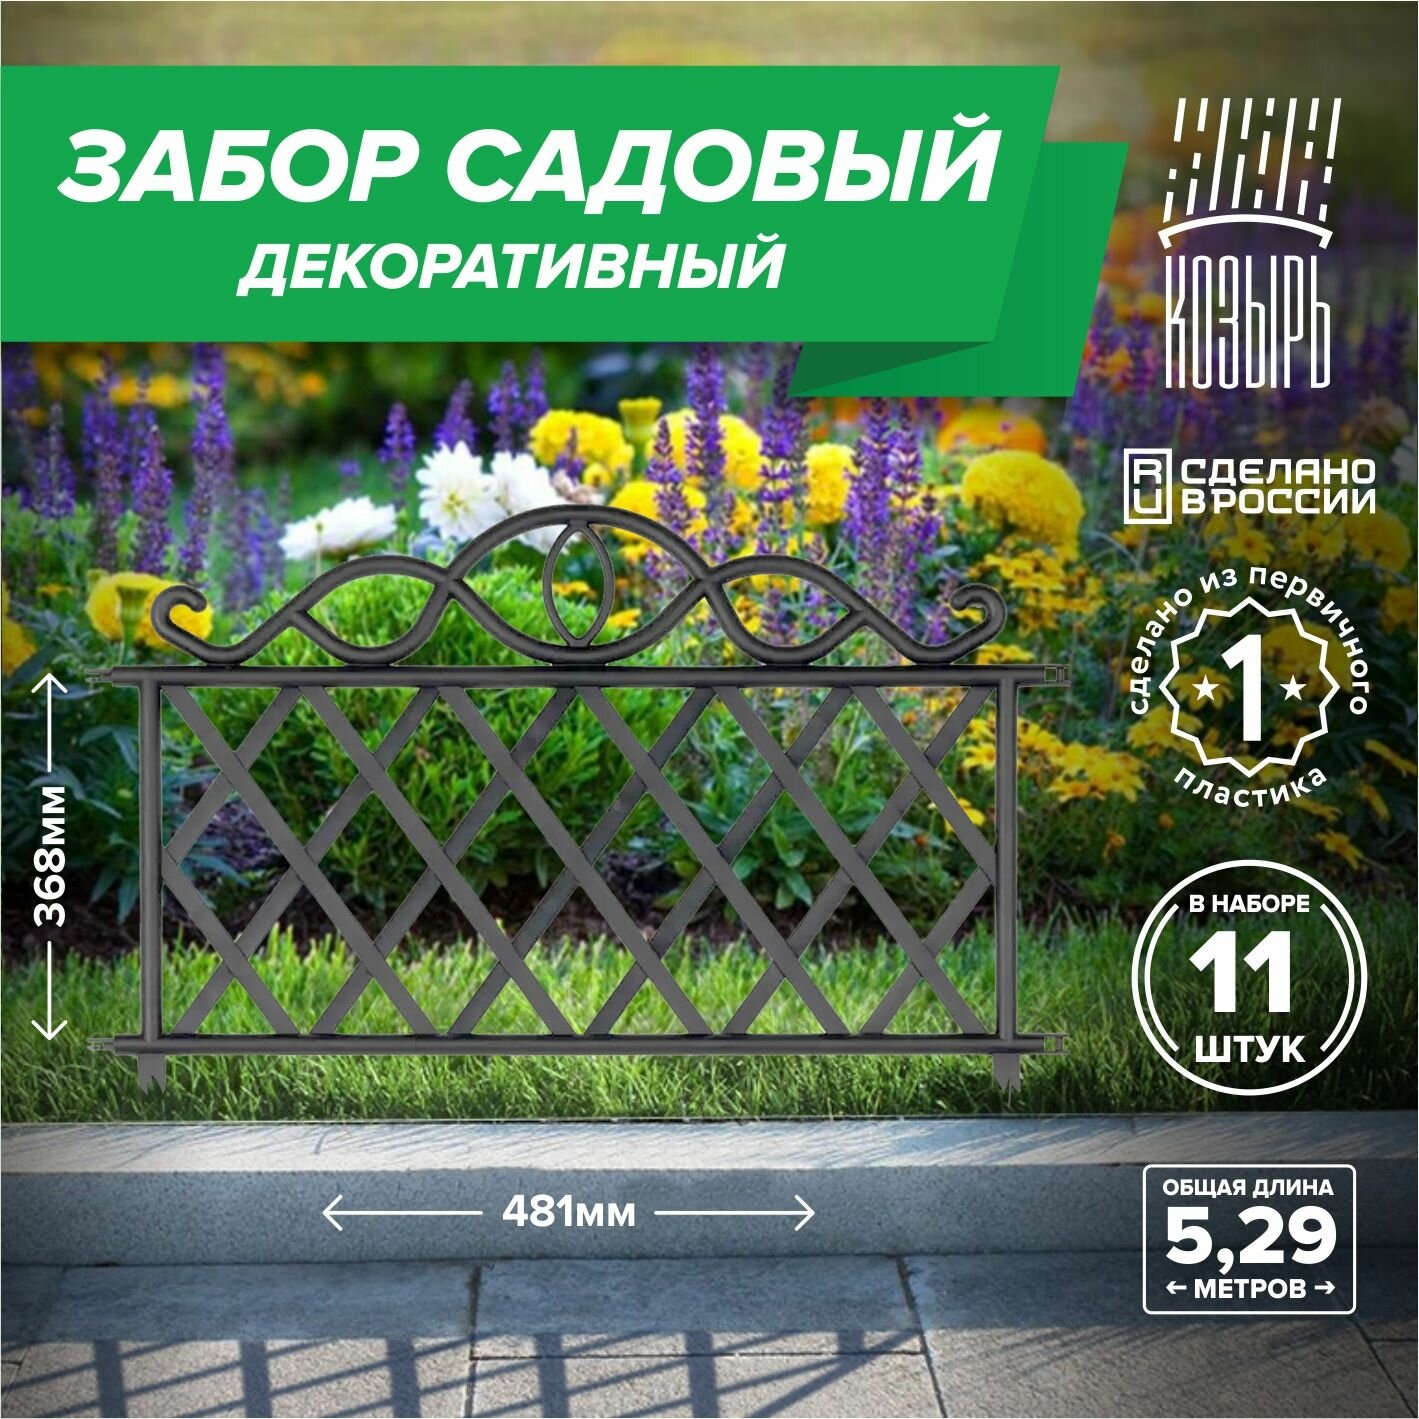 Декоративный садовый забор 48,1см х 11 шт, общая длина: 3,367 м, ограждение для цветника и клумбы, для дачи и сада черный, Россия